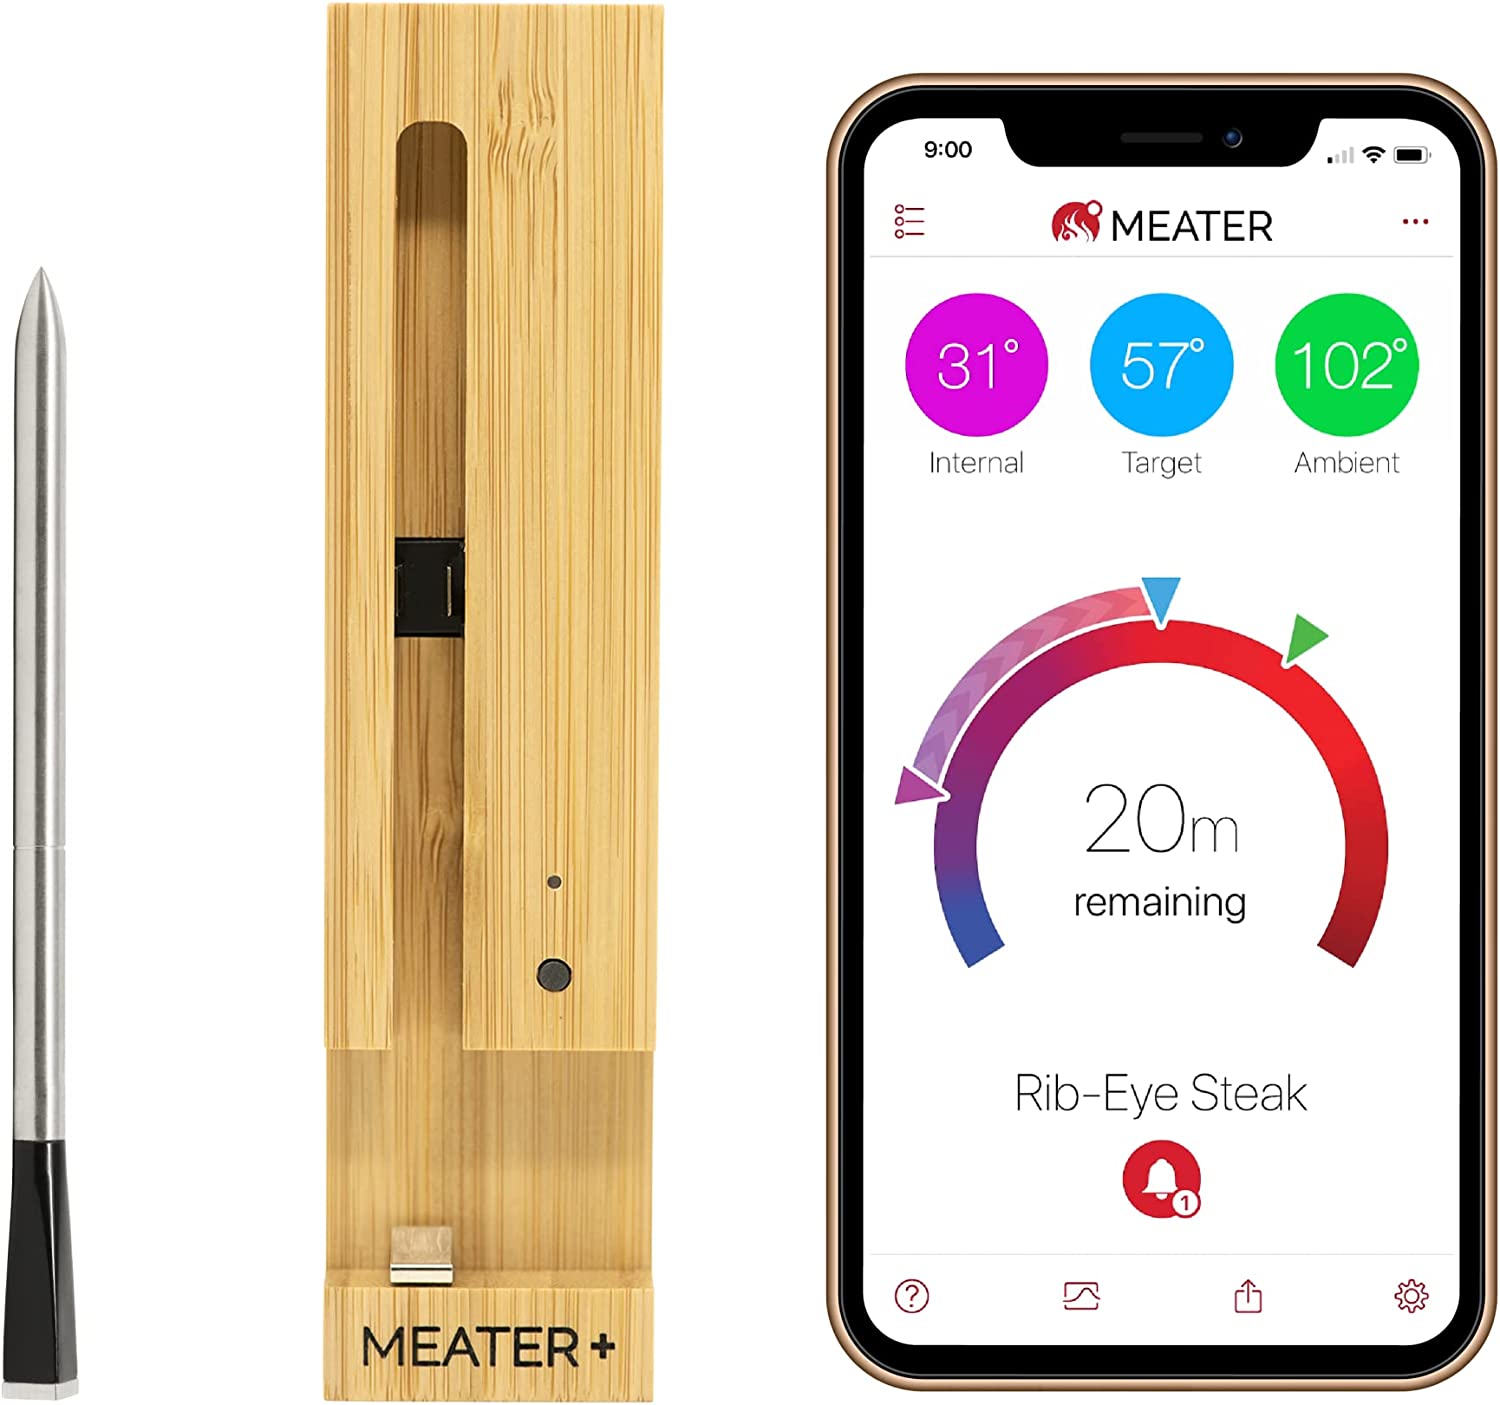 Meater plus умный термометр для мяса, показывающий термометр и приложение на телефоне